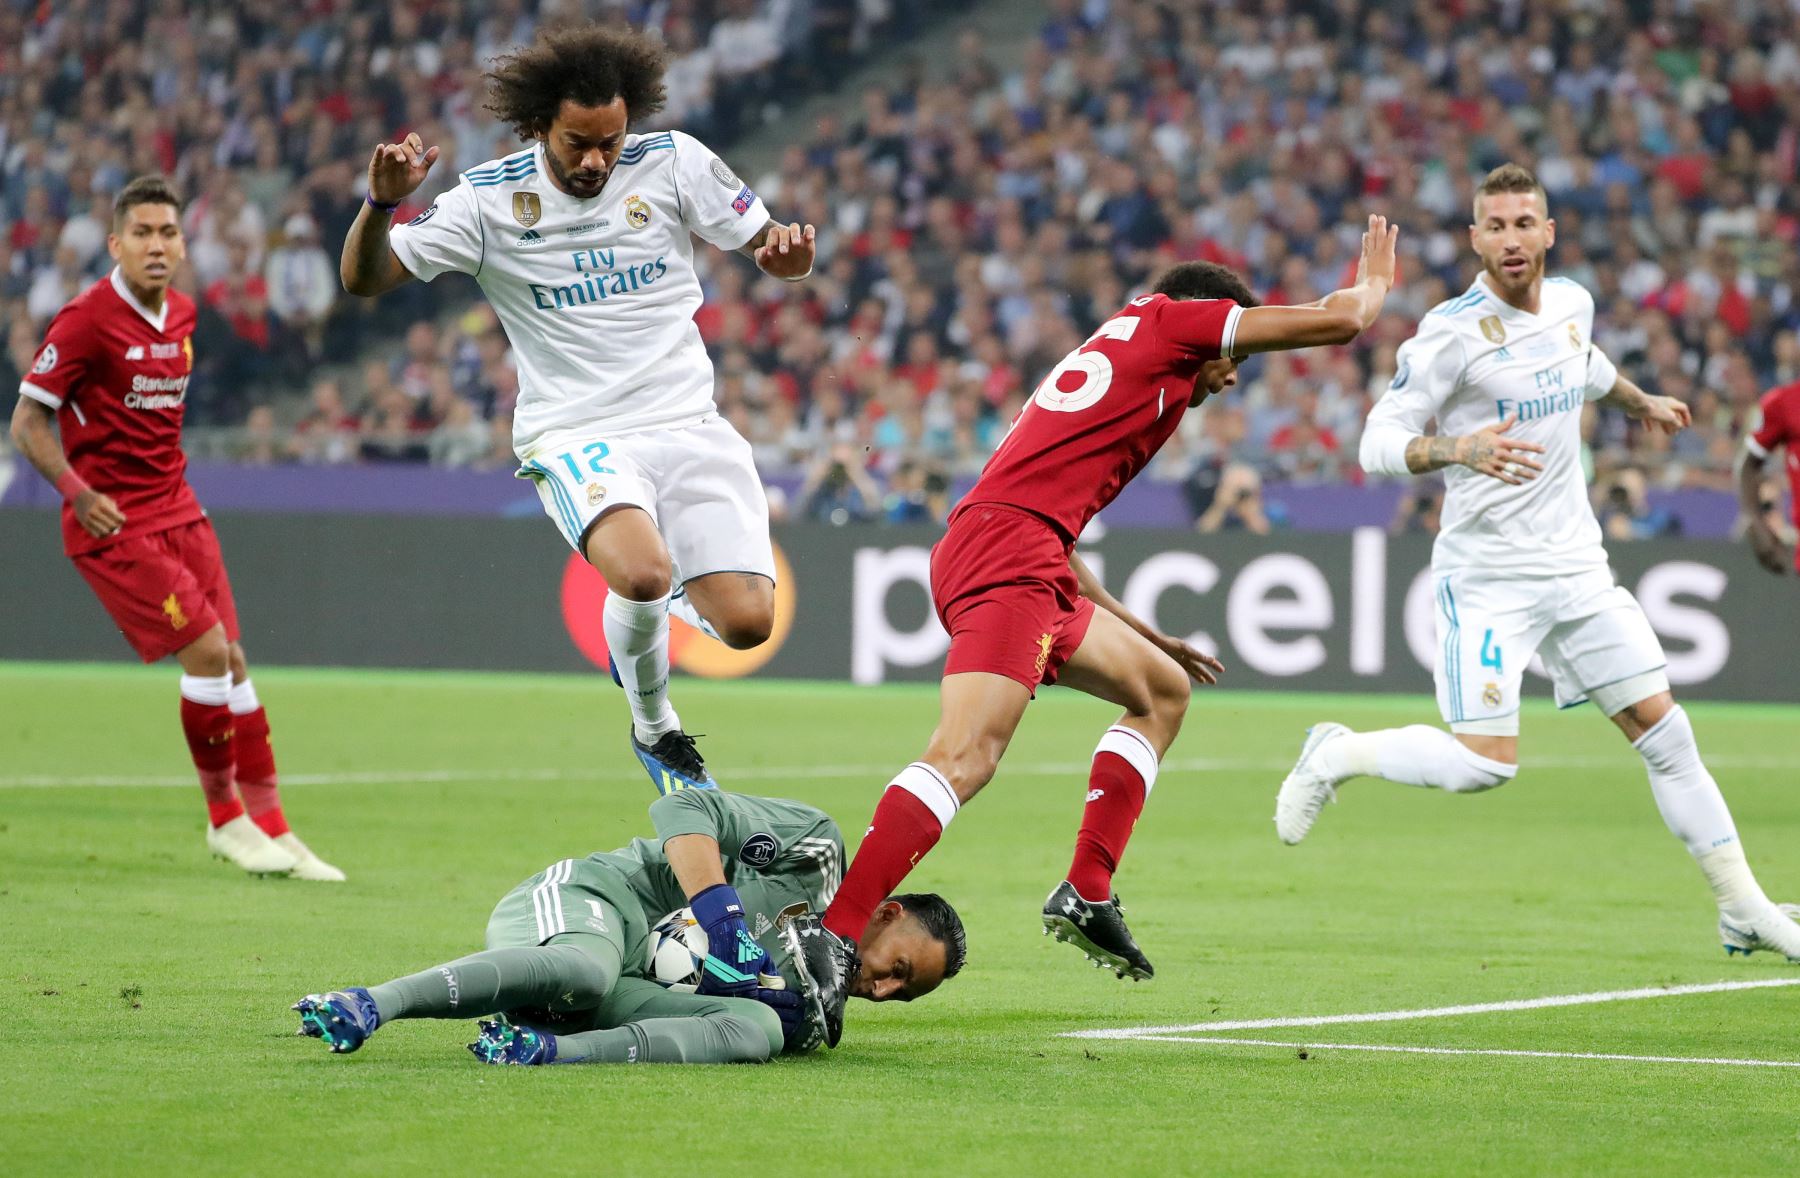 El portero Keylor Navas toma el balón frente al compañero del Real Madrid Marcelo y Trent Alexander-Arnold del Liverpool antes de la final de la UEFA Champions League.Foto:AFP